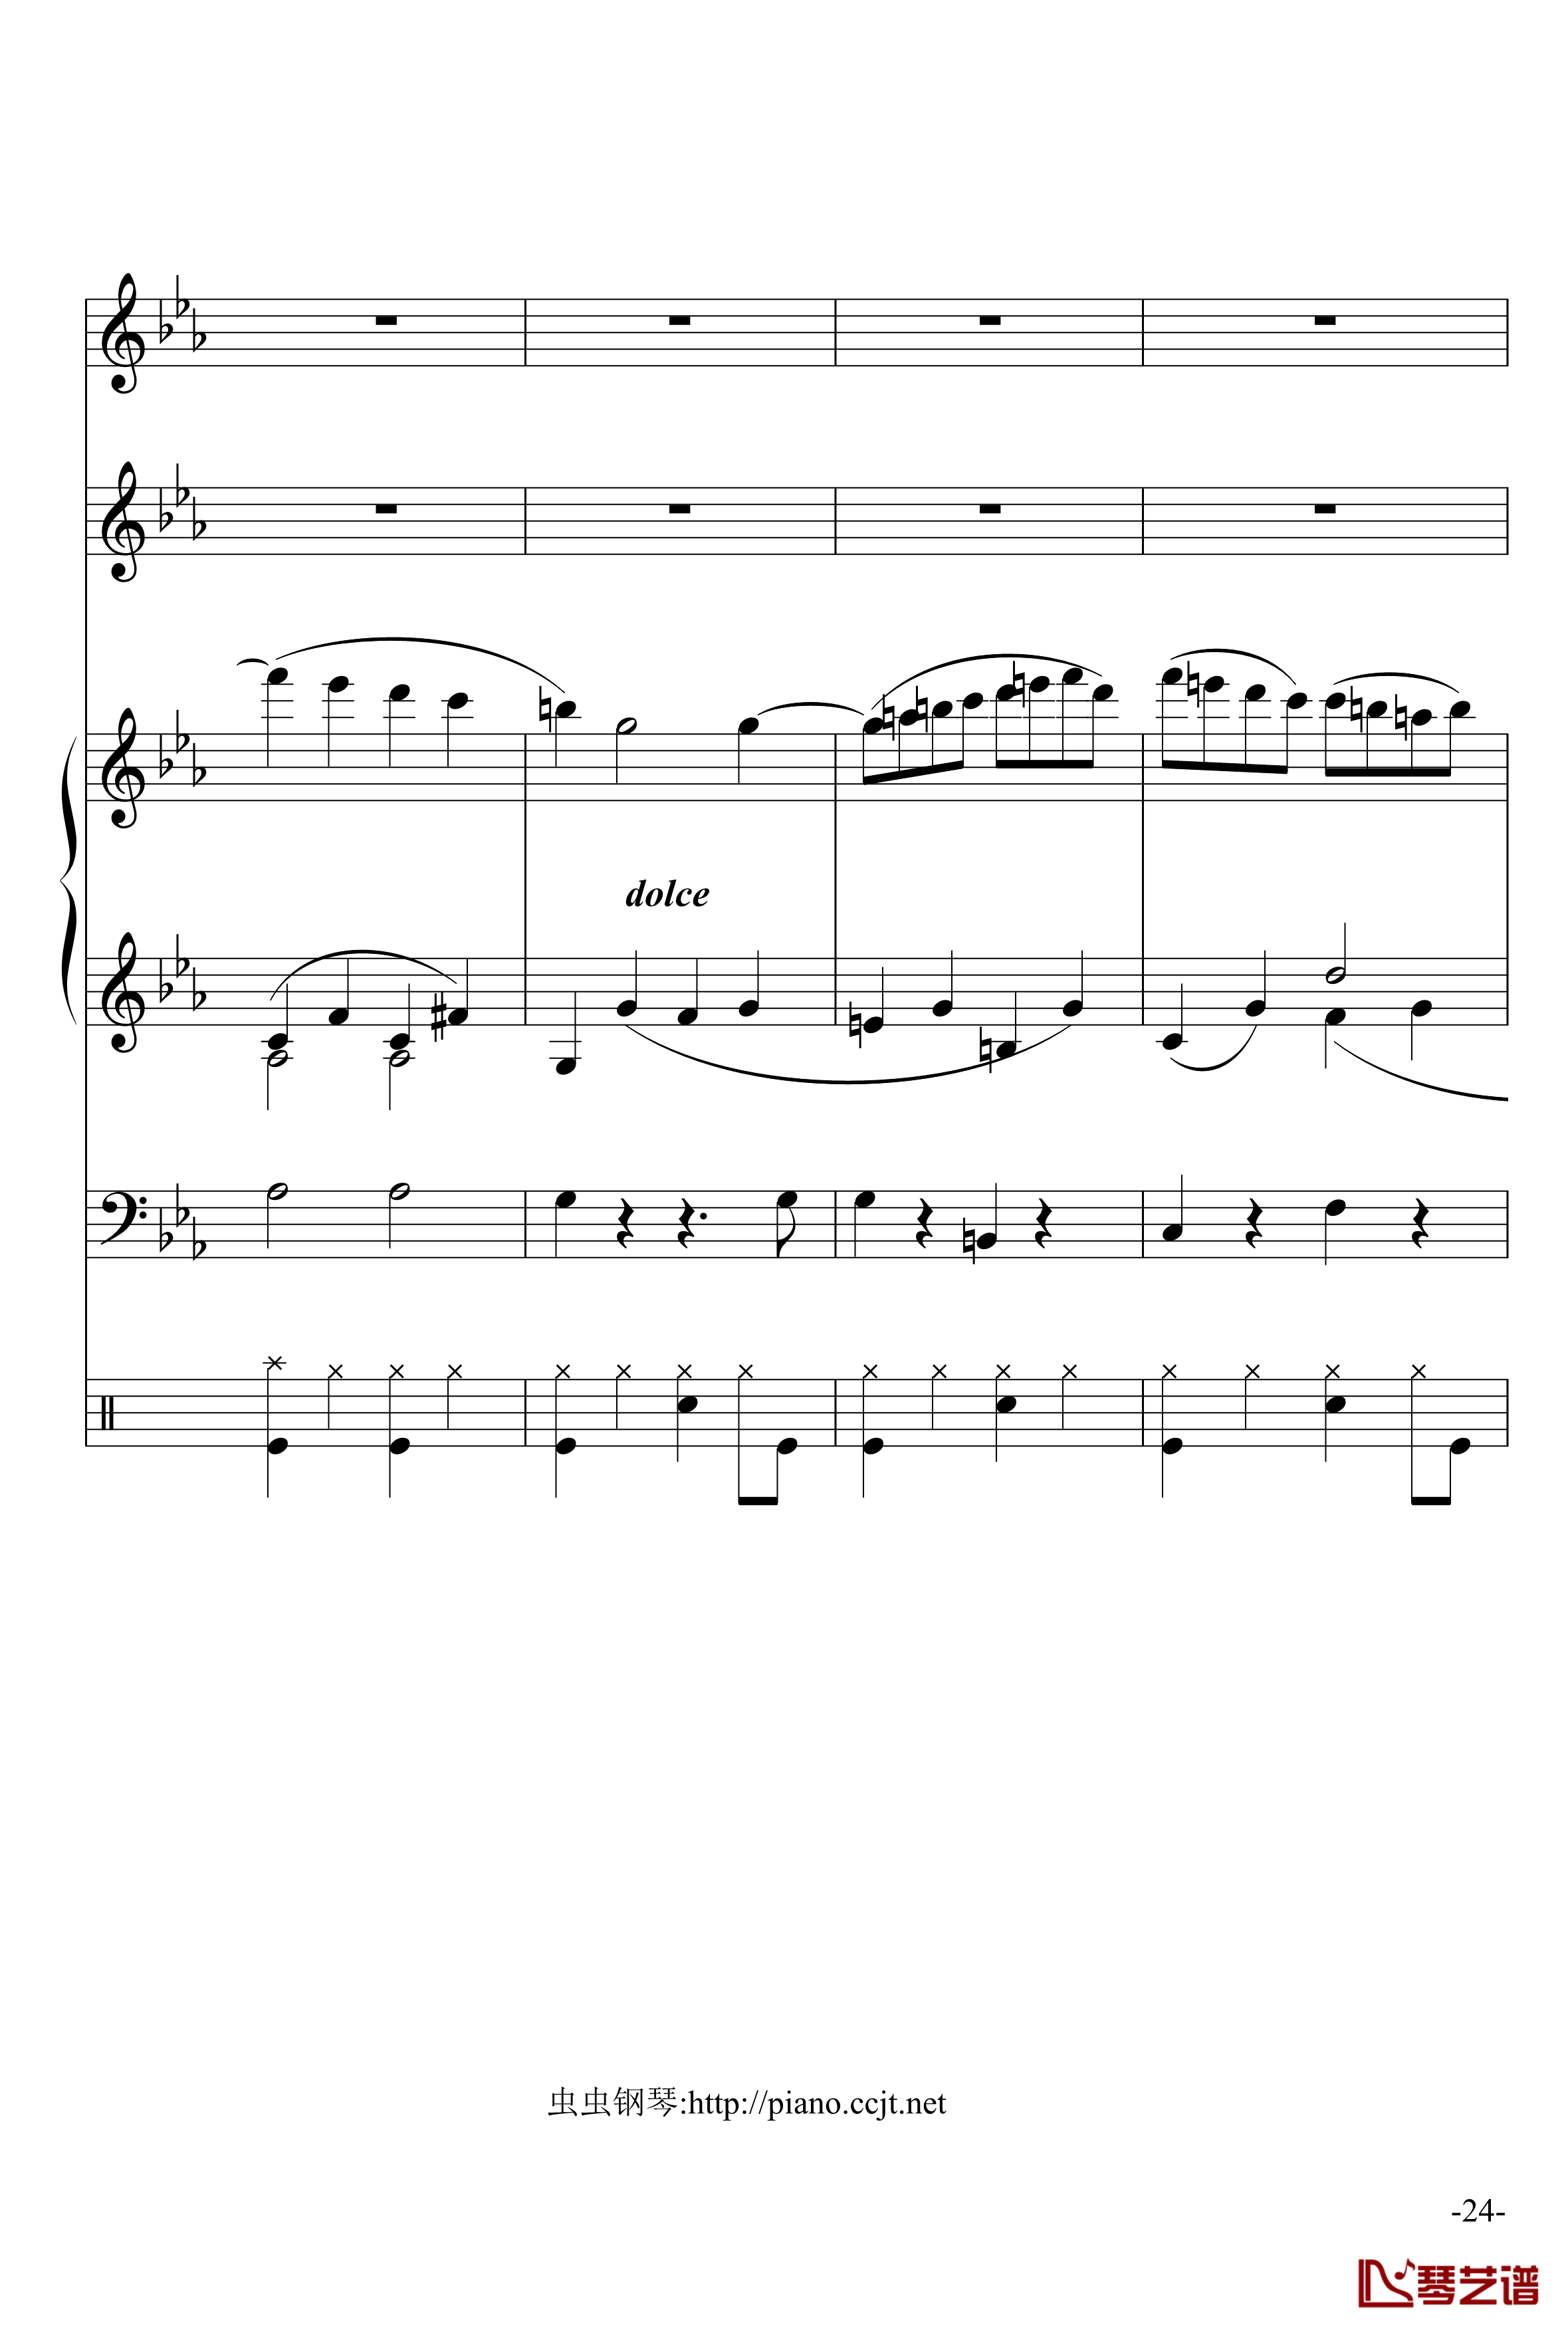 悲怆奏鸣曲钢琴谱-加小乐队-贝多芬-beethoven24